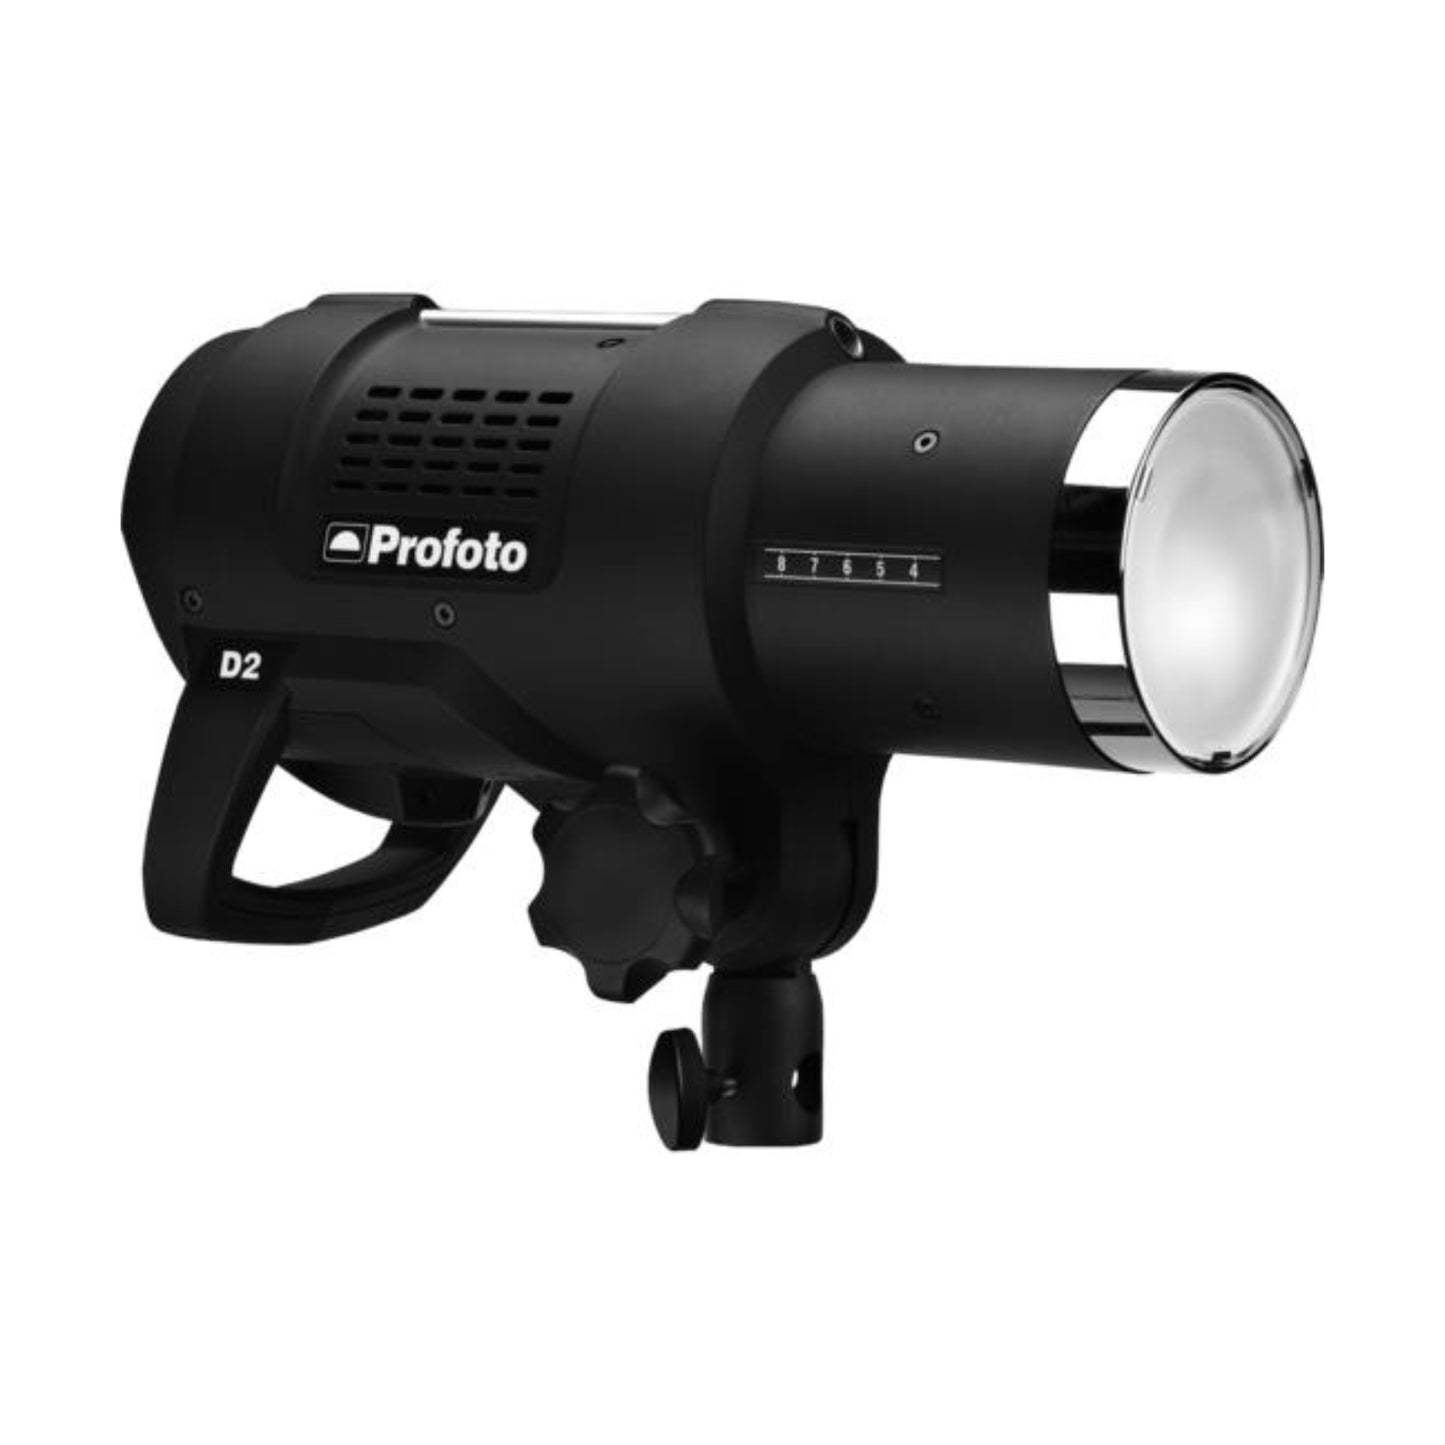 Profoto D2 1000w single kit studio flash lighting for hire